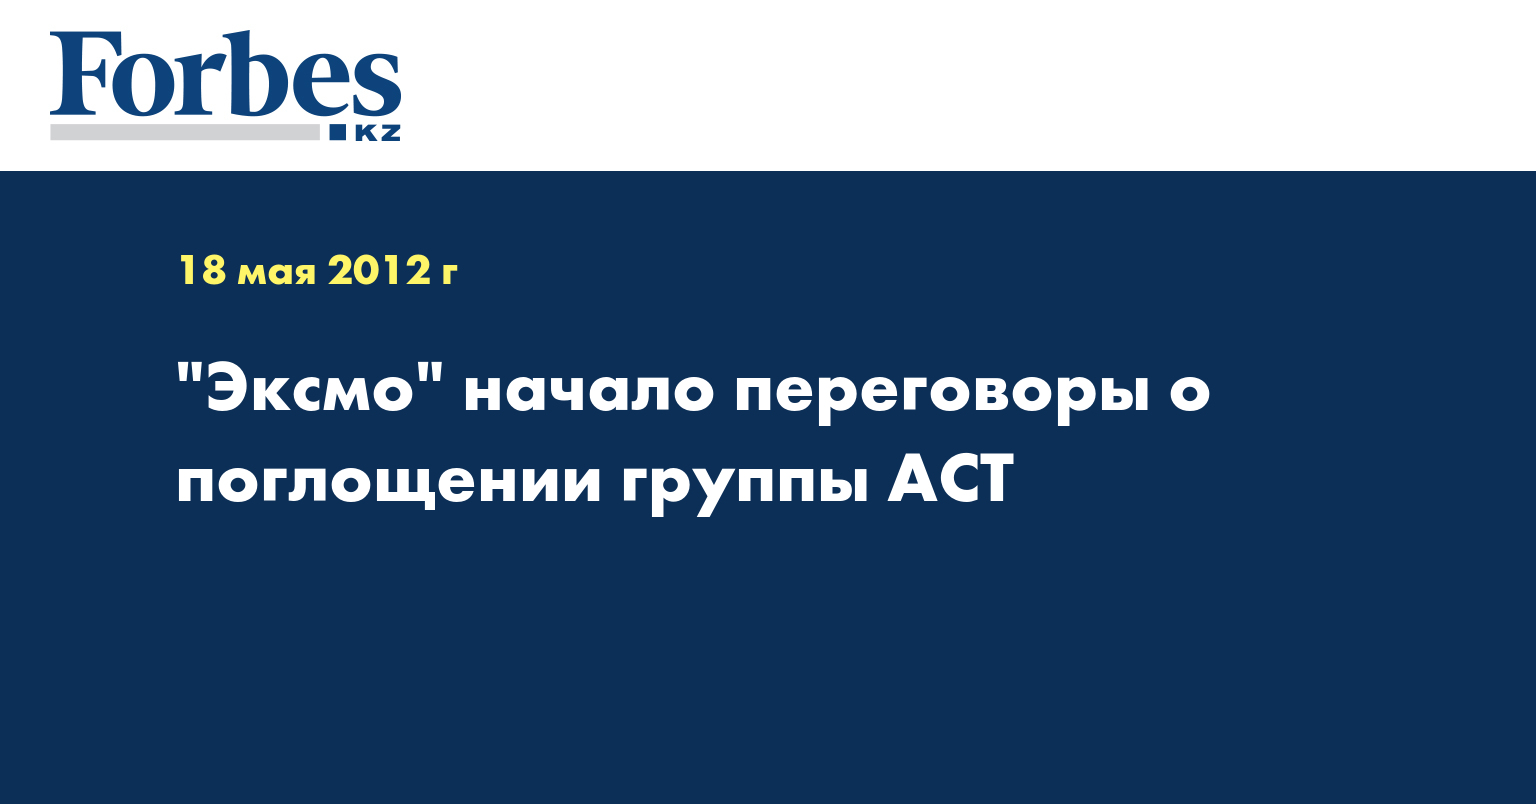 "Эксмо" начало переговоры о поглощении группы АСТ